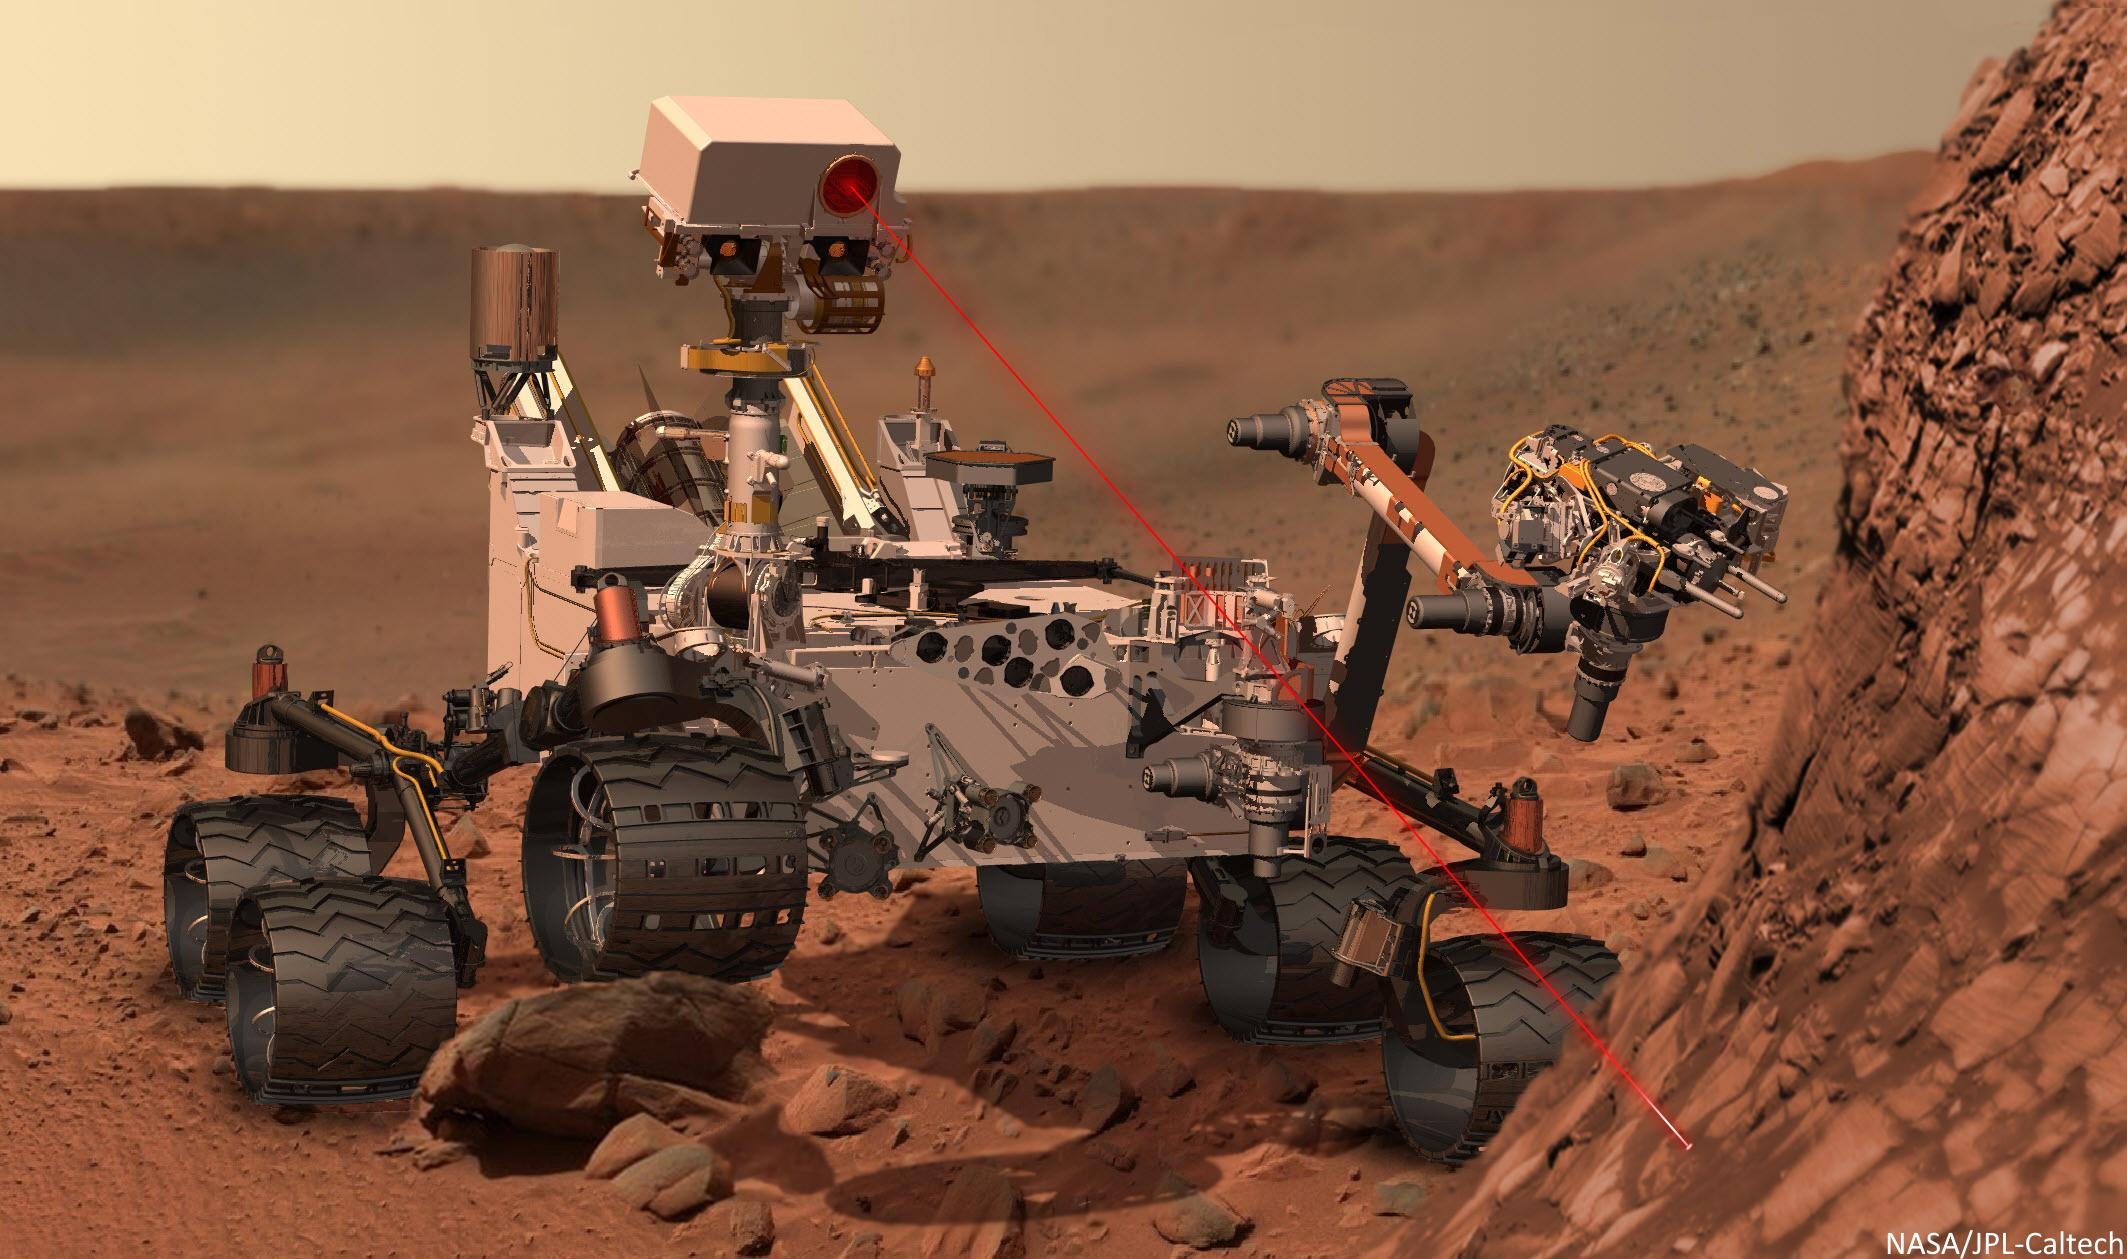 Nasa Rover on Mars